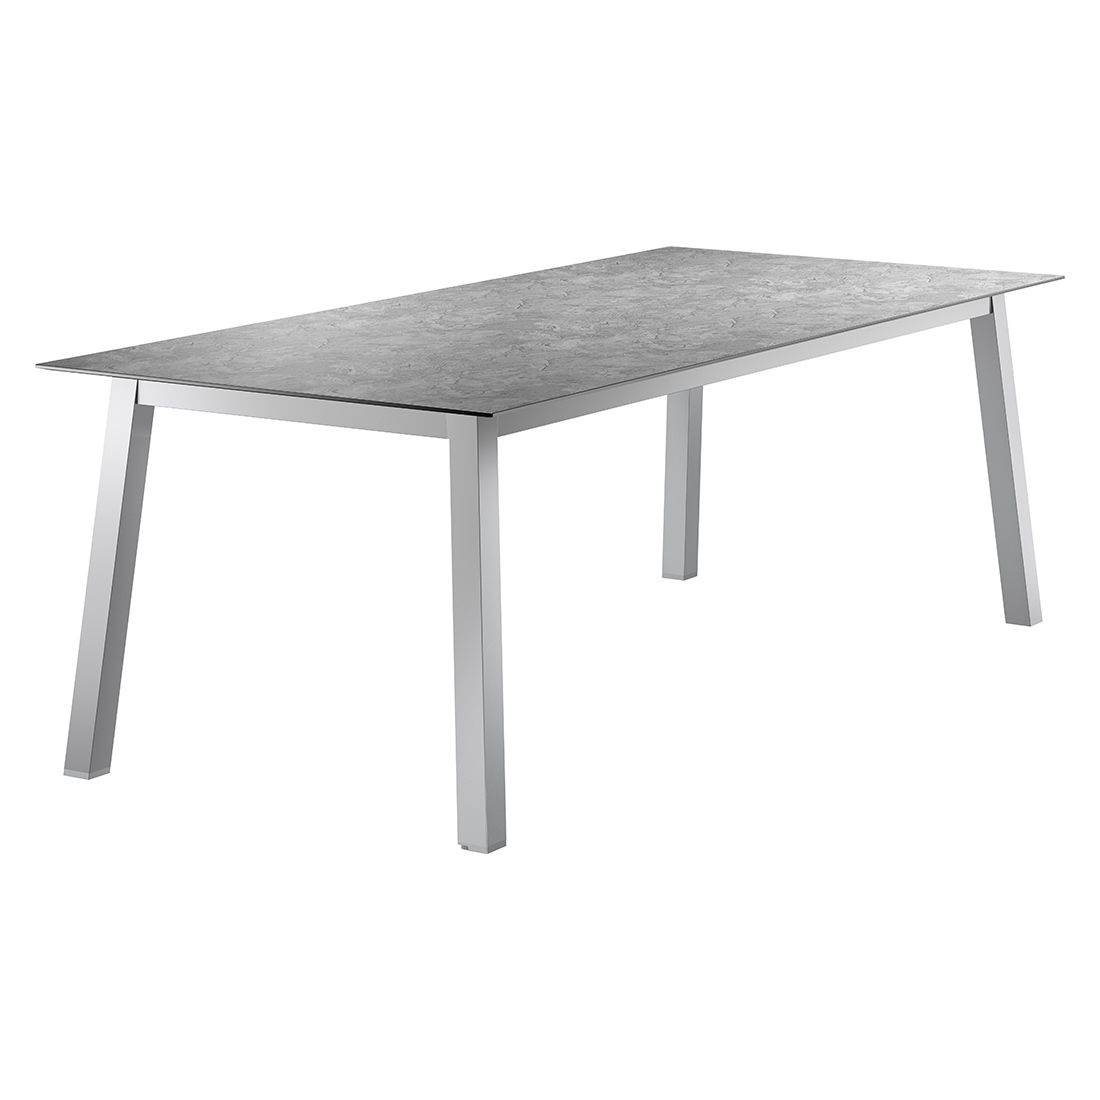 Sieger Gartentisch 220x100cm Aluminium/Polytec Graphit/Schiefer Anthrazit | Tische